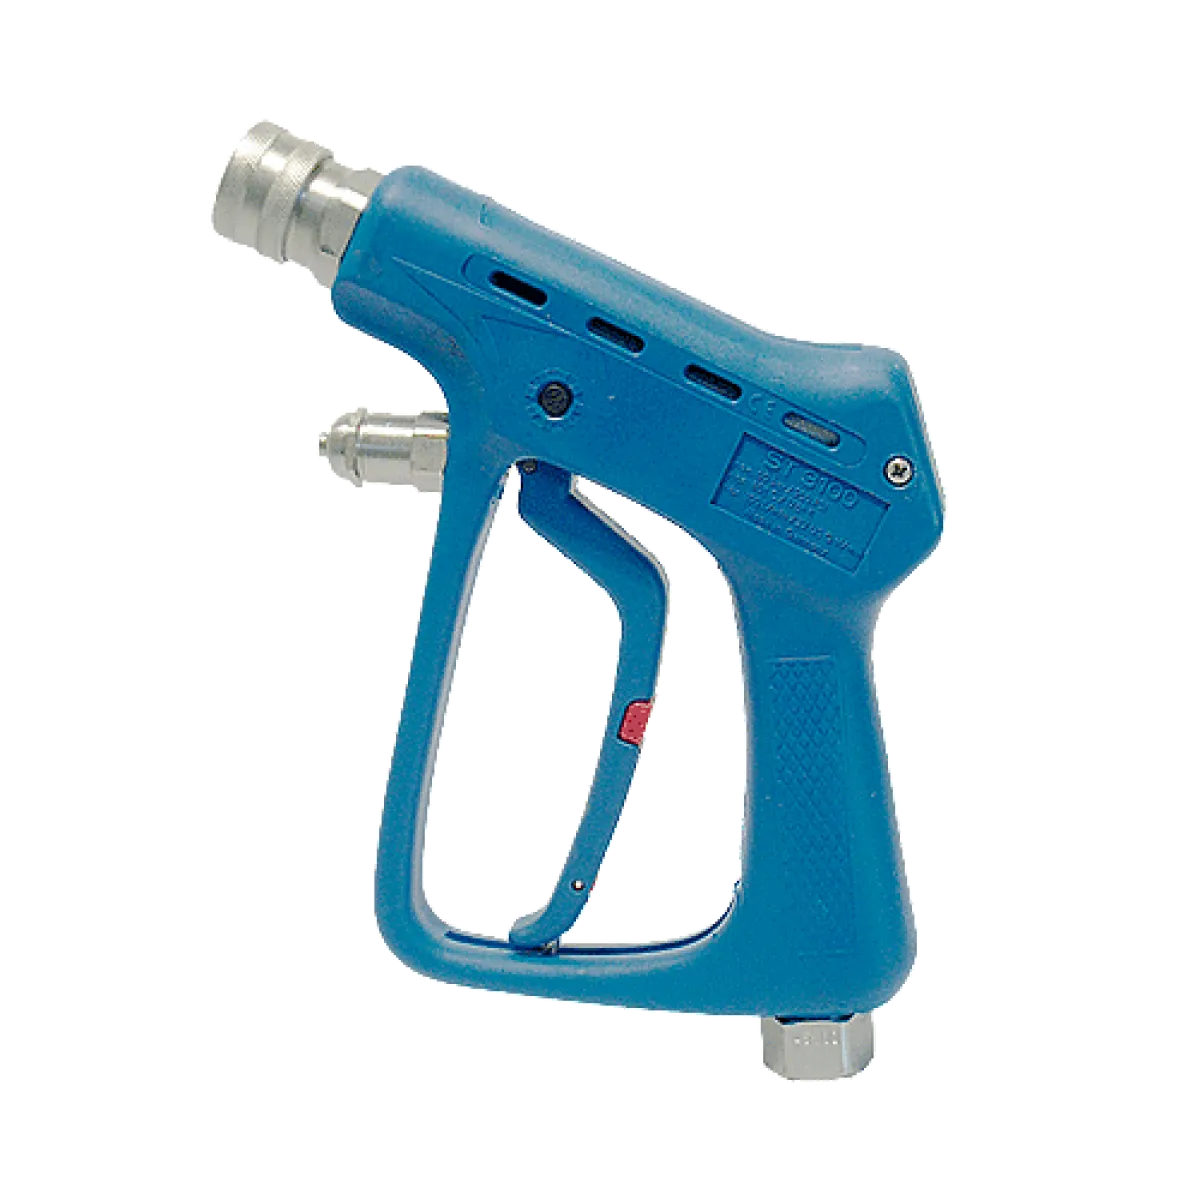 Spray gun ST3100